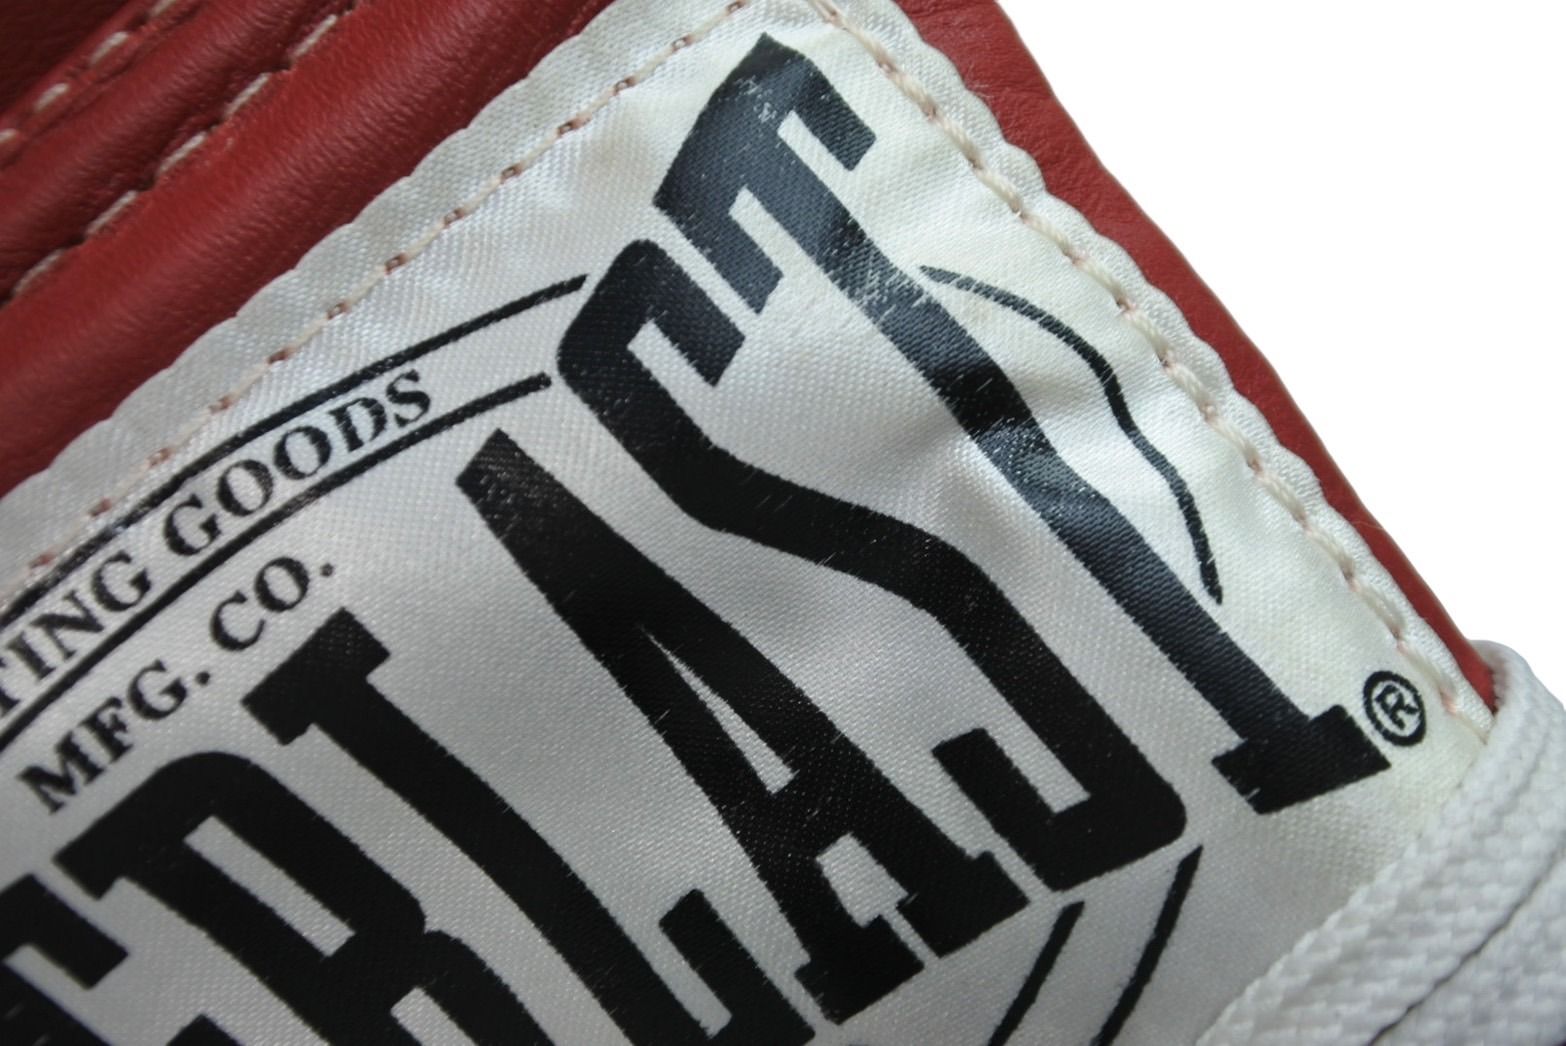 Supreme シュプリーム 08AW EVERLAST Boxing Glove エバーラストコラボ ボクシンググローブ レッド 美品 中古  53964